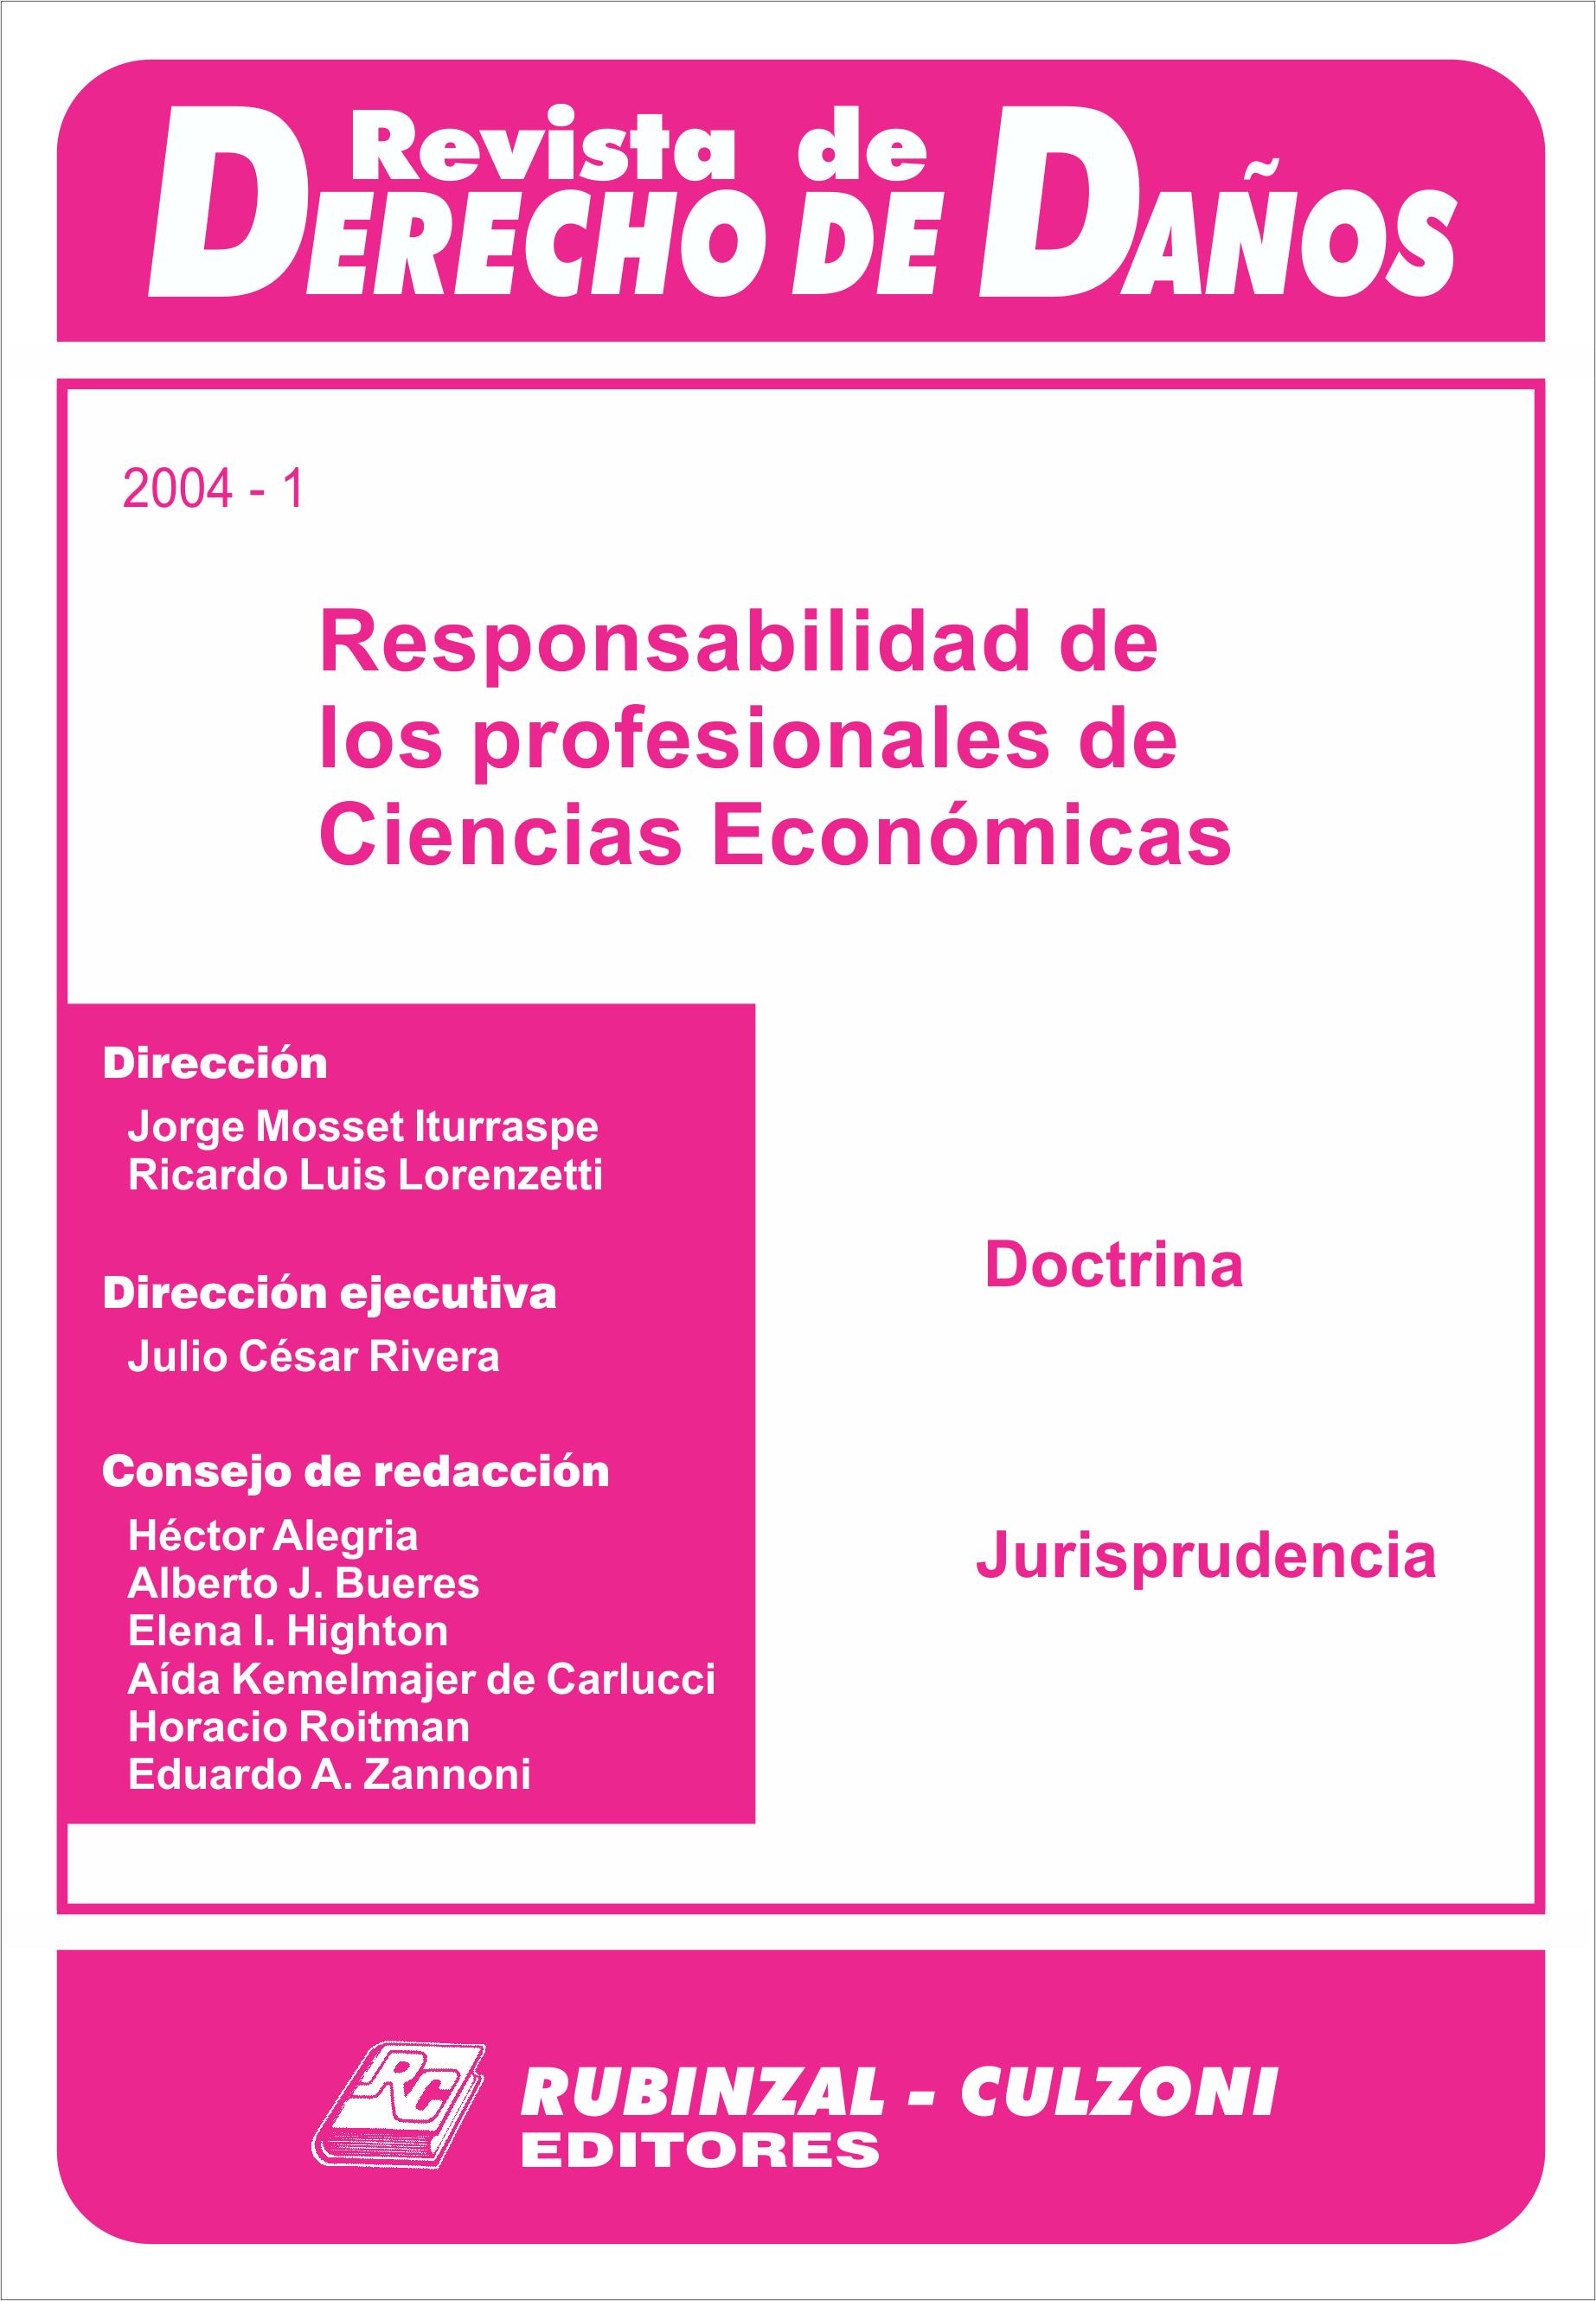 Revista de Derecho de Daños - Responsabilidad de los profesionales de ciencias económicas.